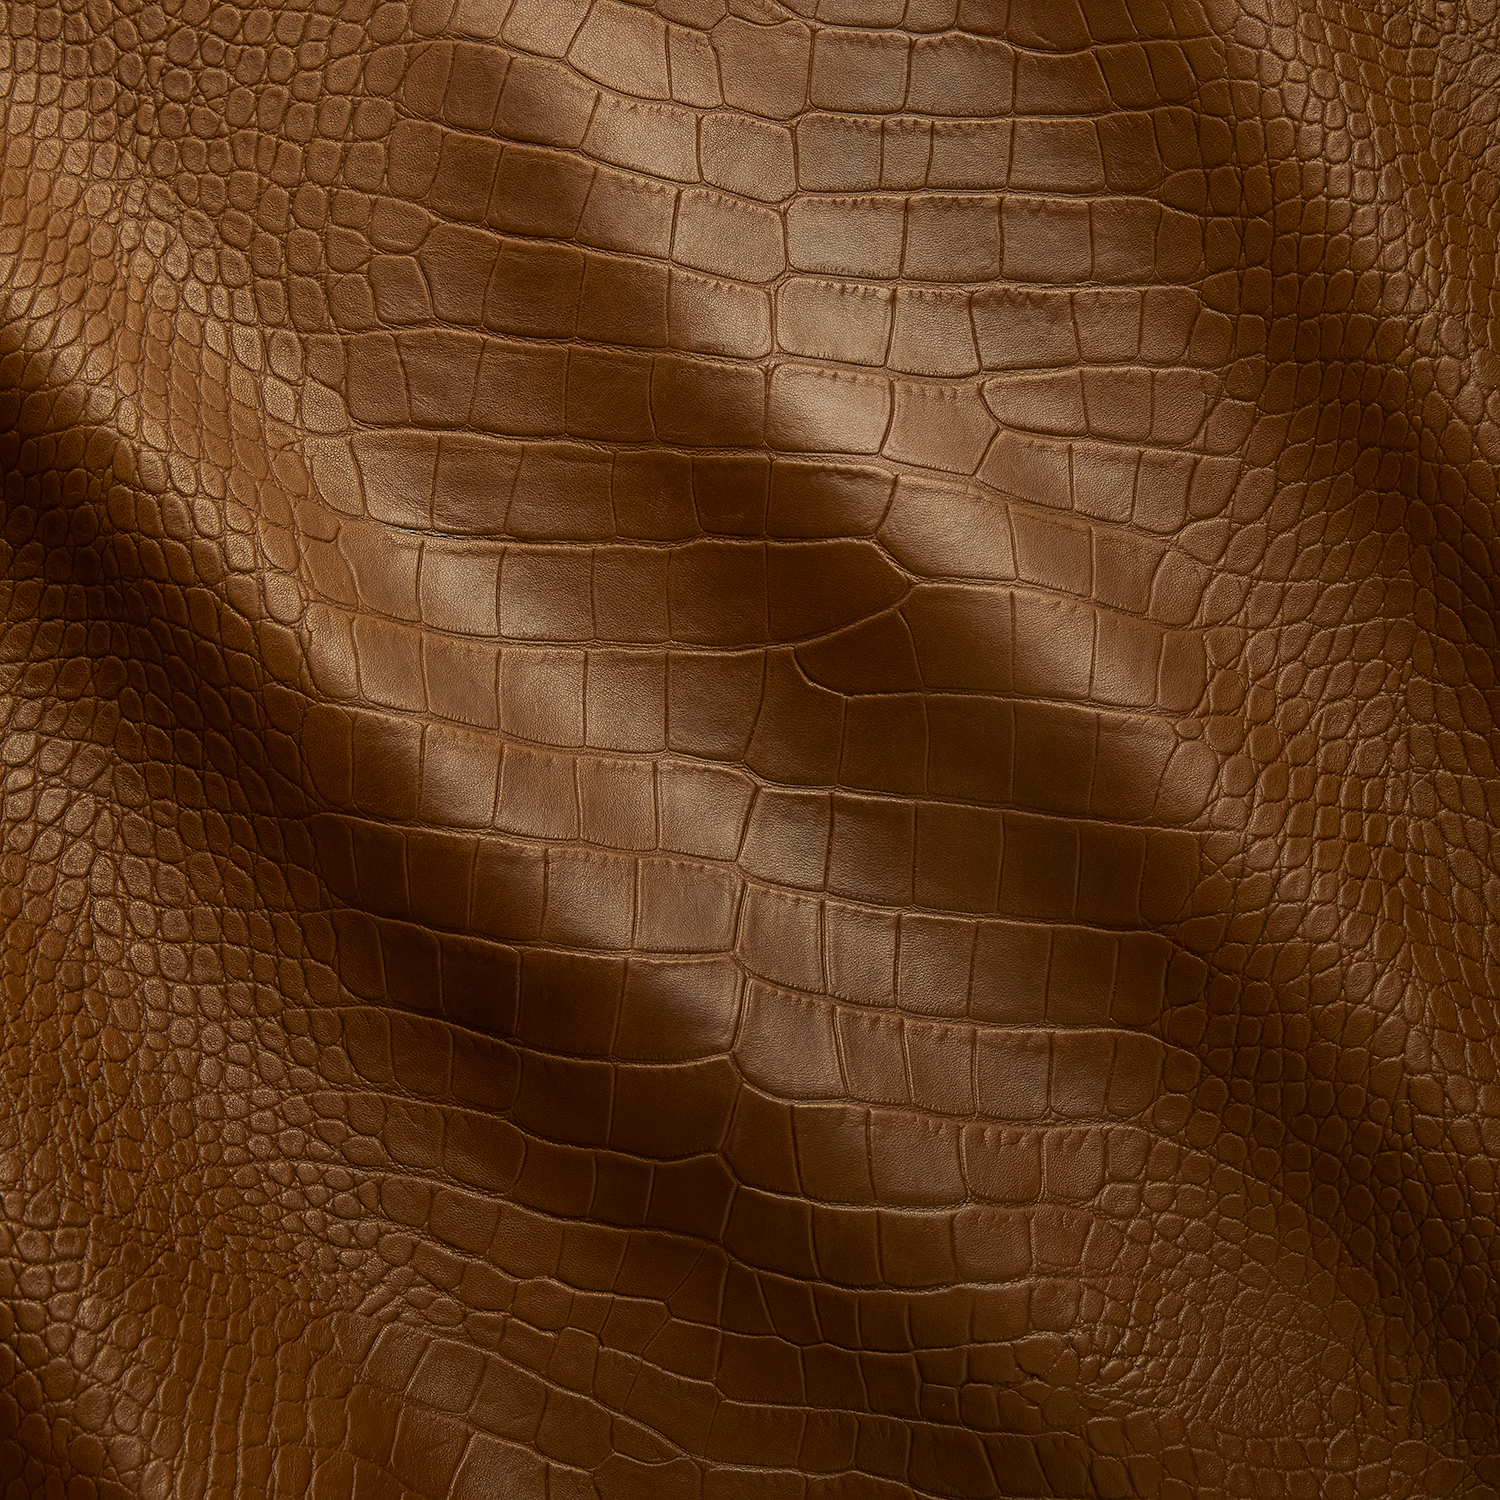  Enamel & Glitter Alligator Grain Embossed Leather